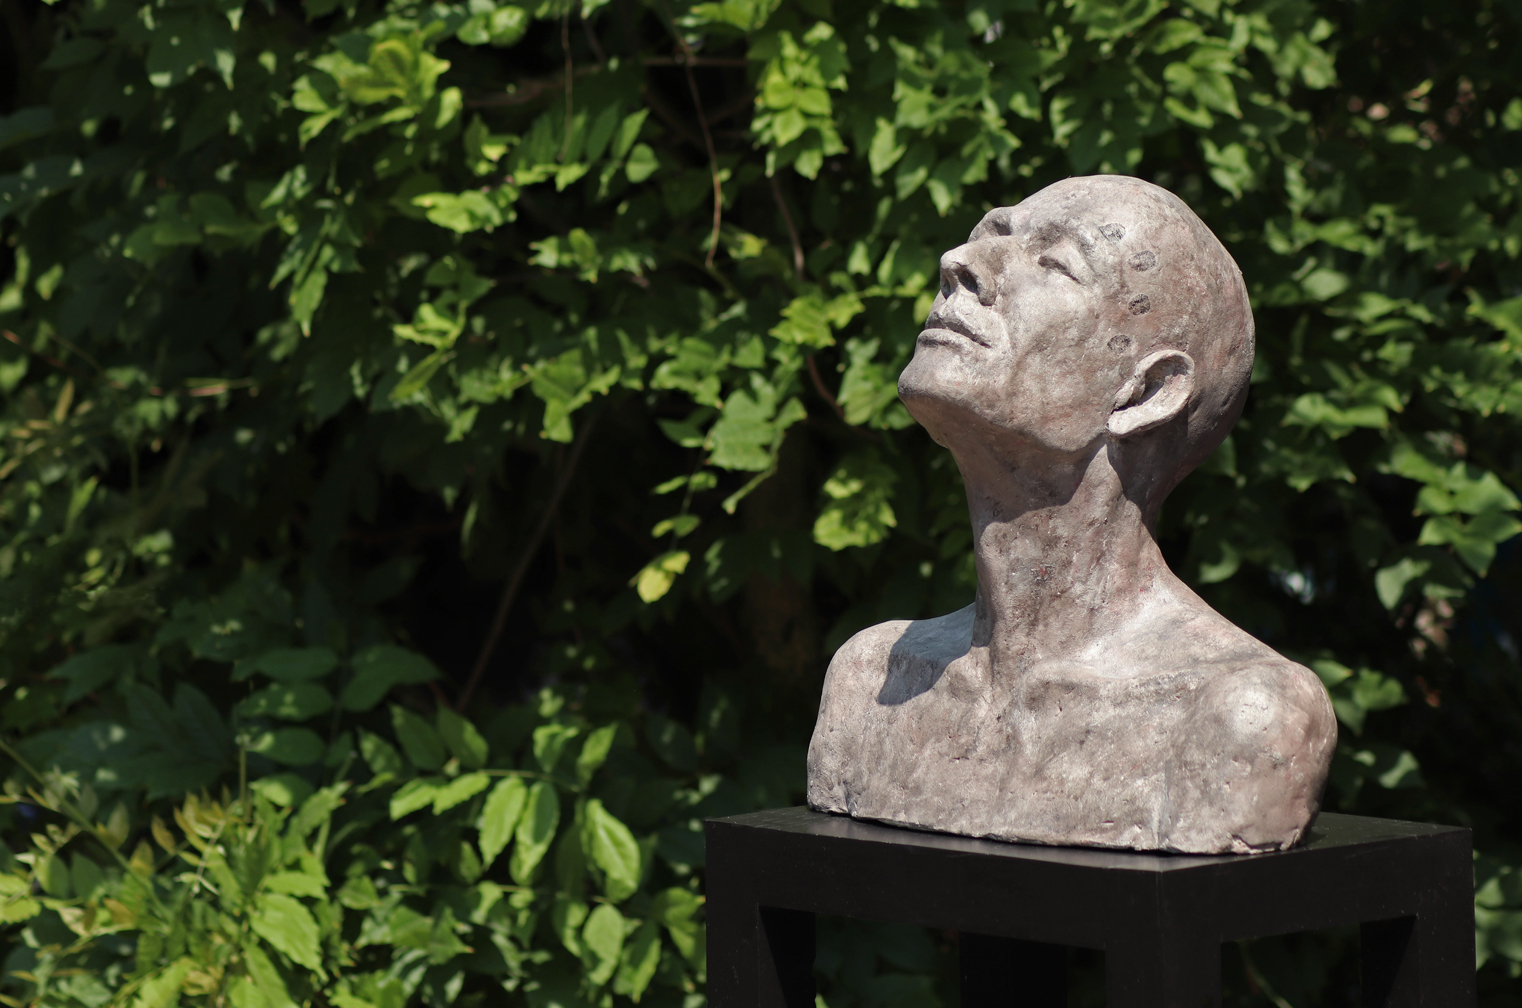 Touched, Kieta Nuij sculptures in bronze